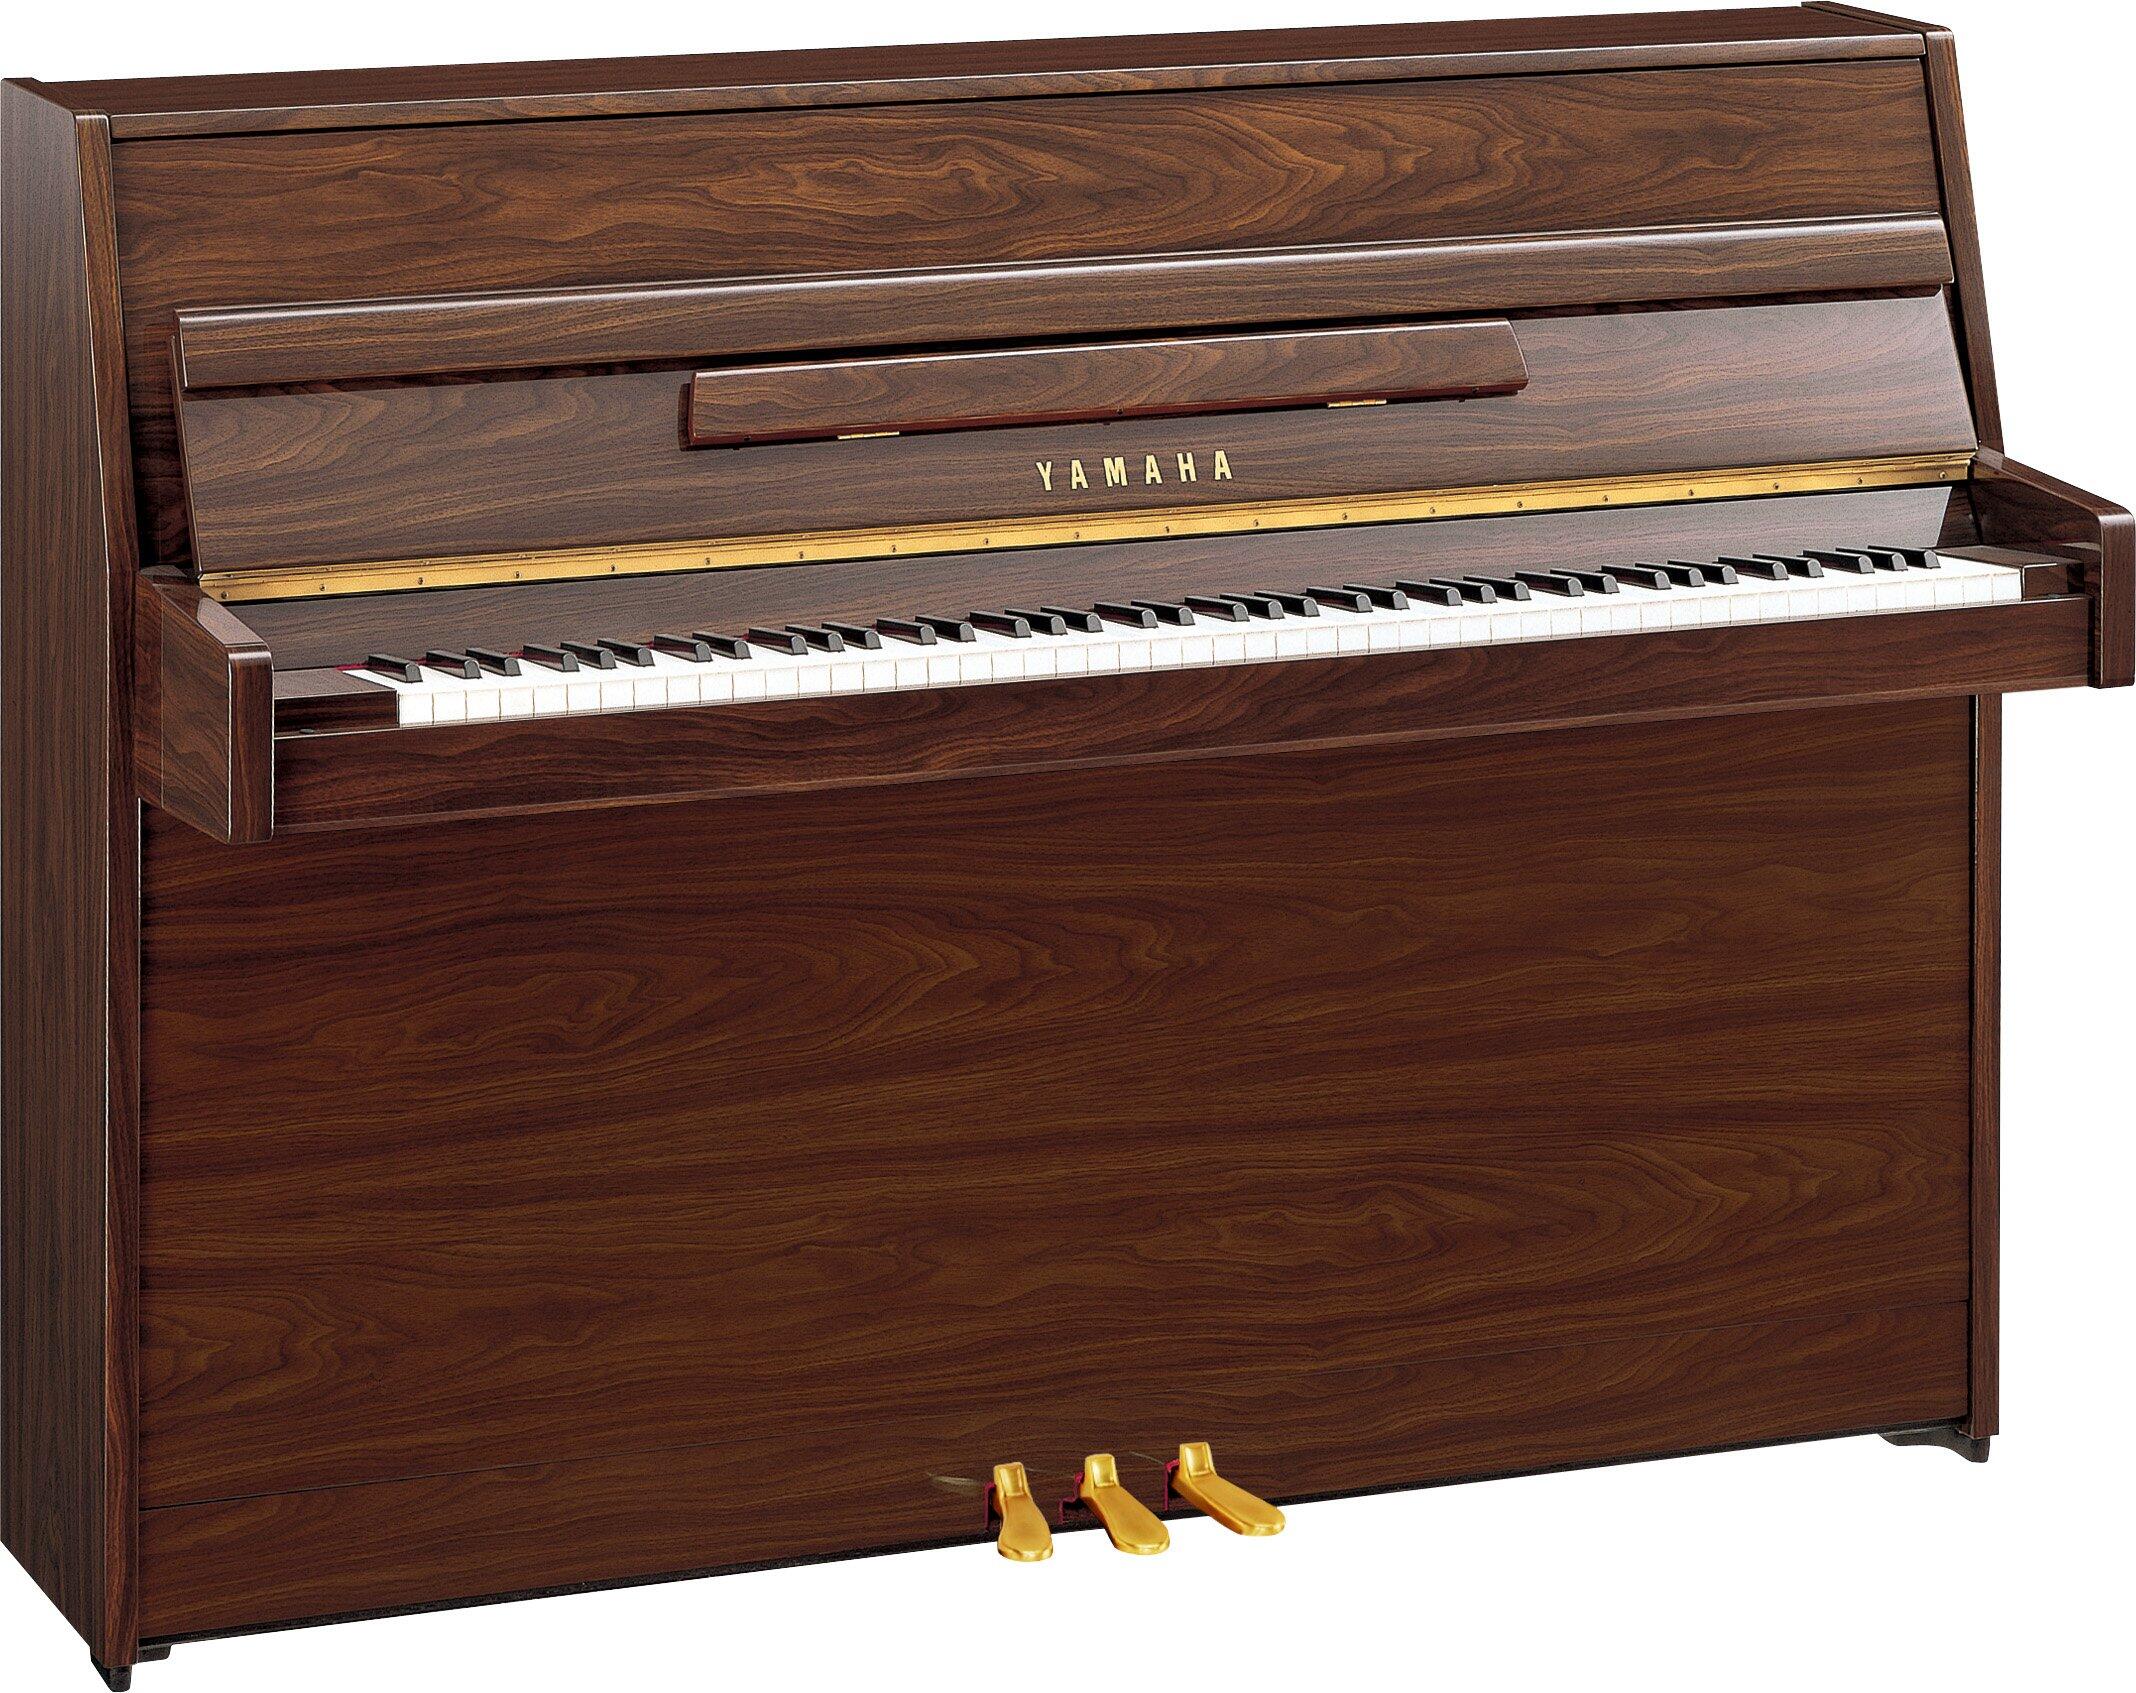 Yamaha Pianos Acoustic B1 PW Dark Walnut glanzpoliert 109cm : photo 1